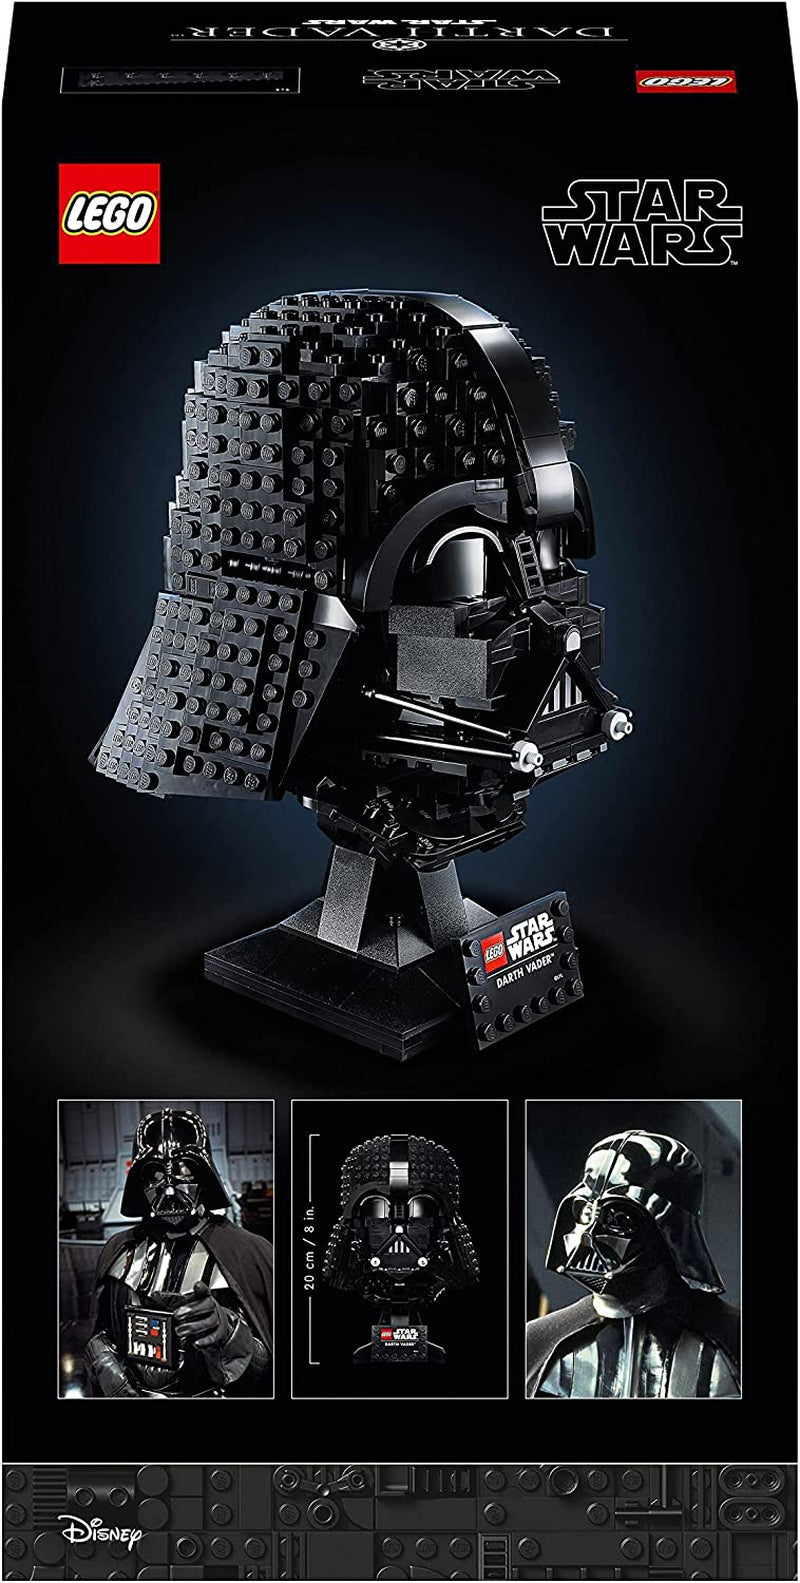 Lego 75304 Star Wars Darth Vader Helmet Set